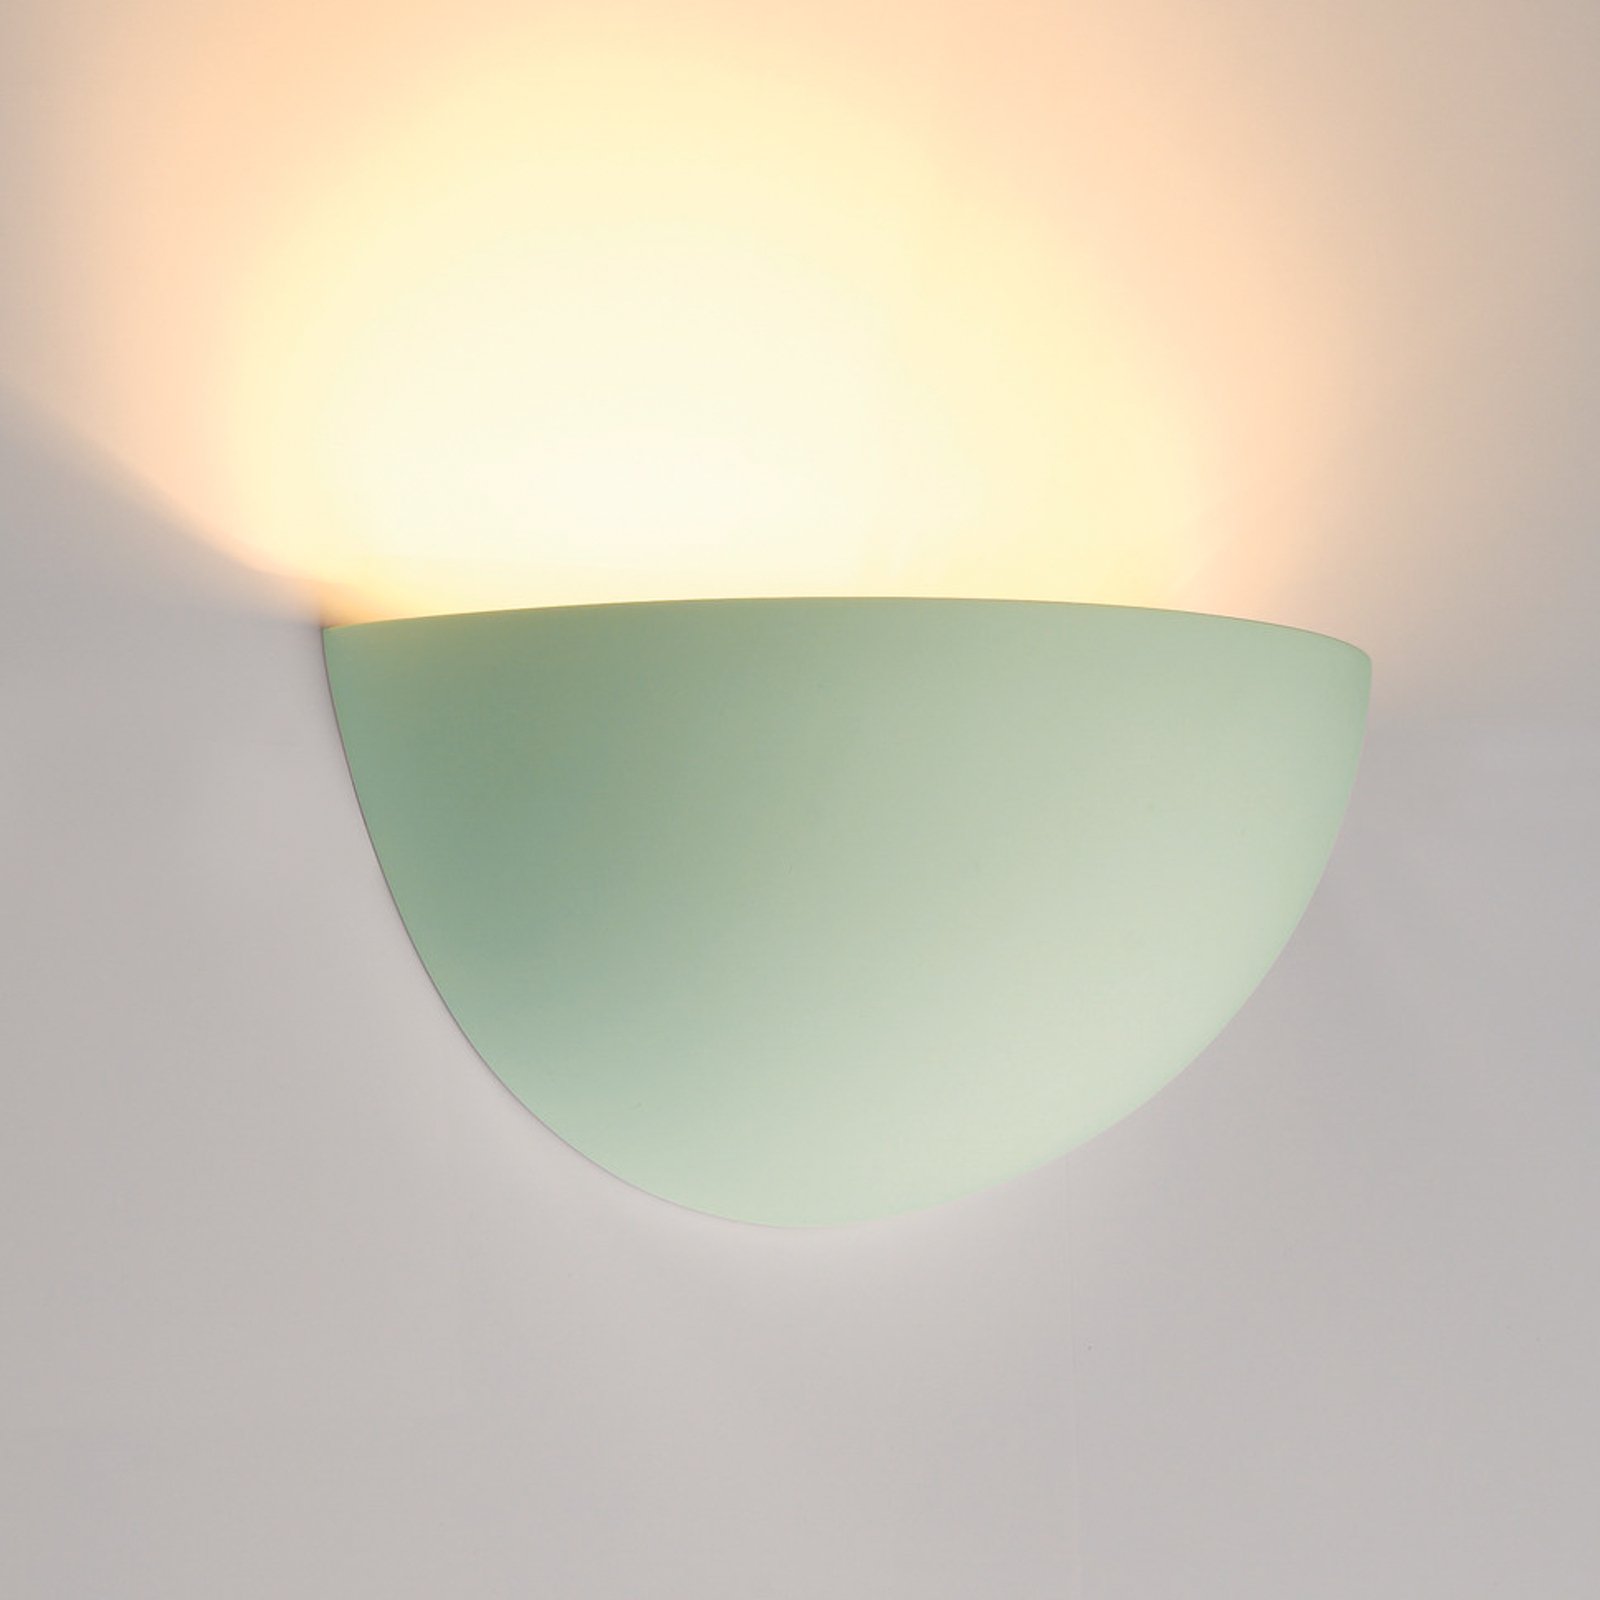 SLV wandlamp Plastra 101, wit, gips, breedte 14 cm